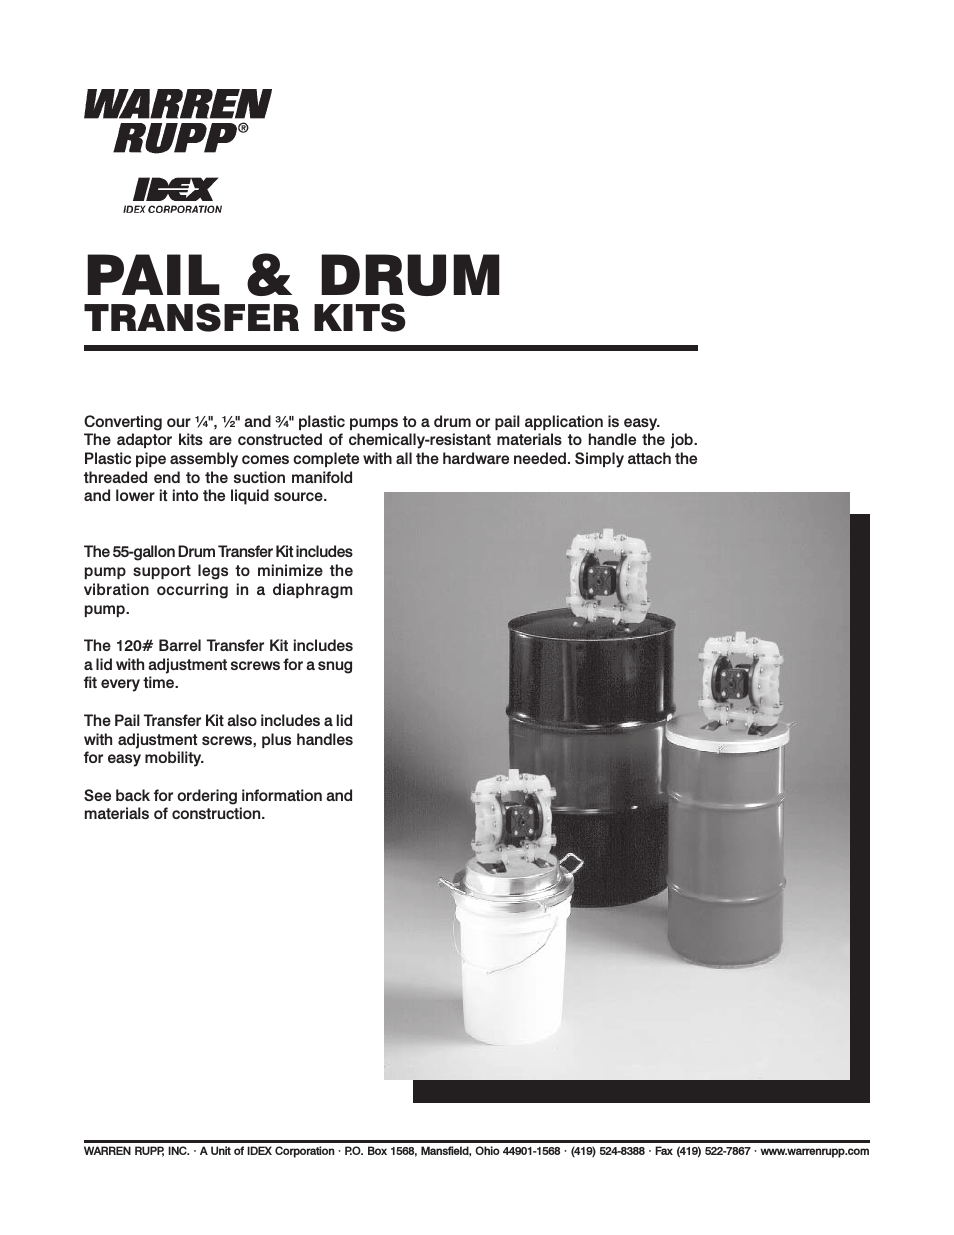 Pail & Drum Transfer Kits